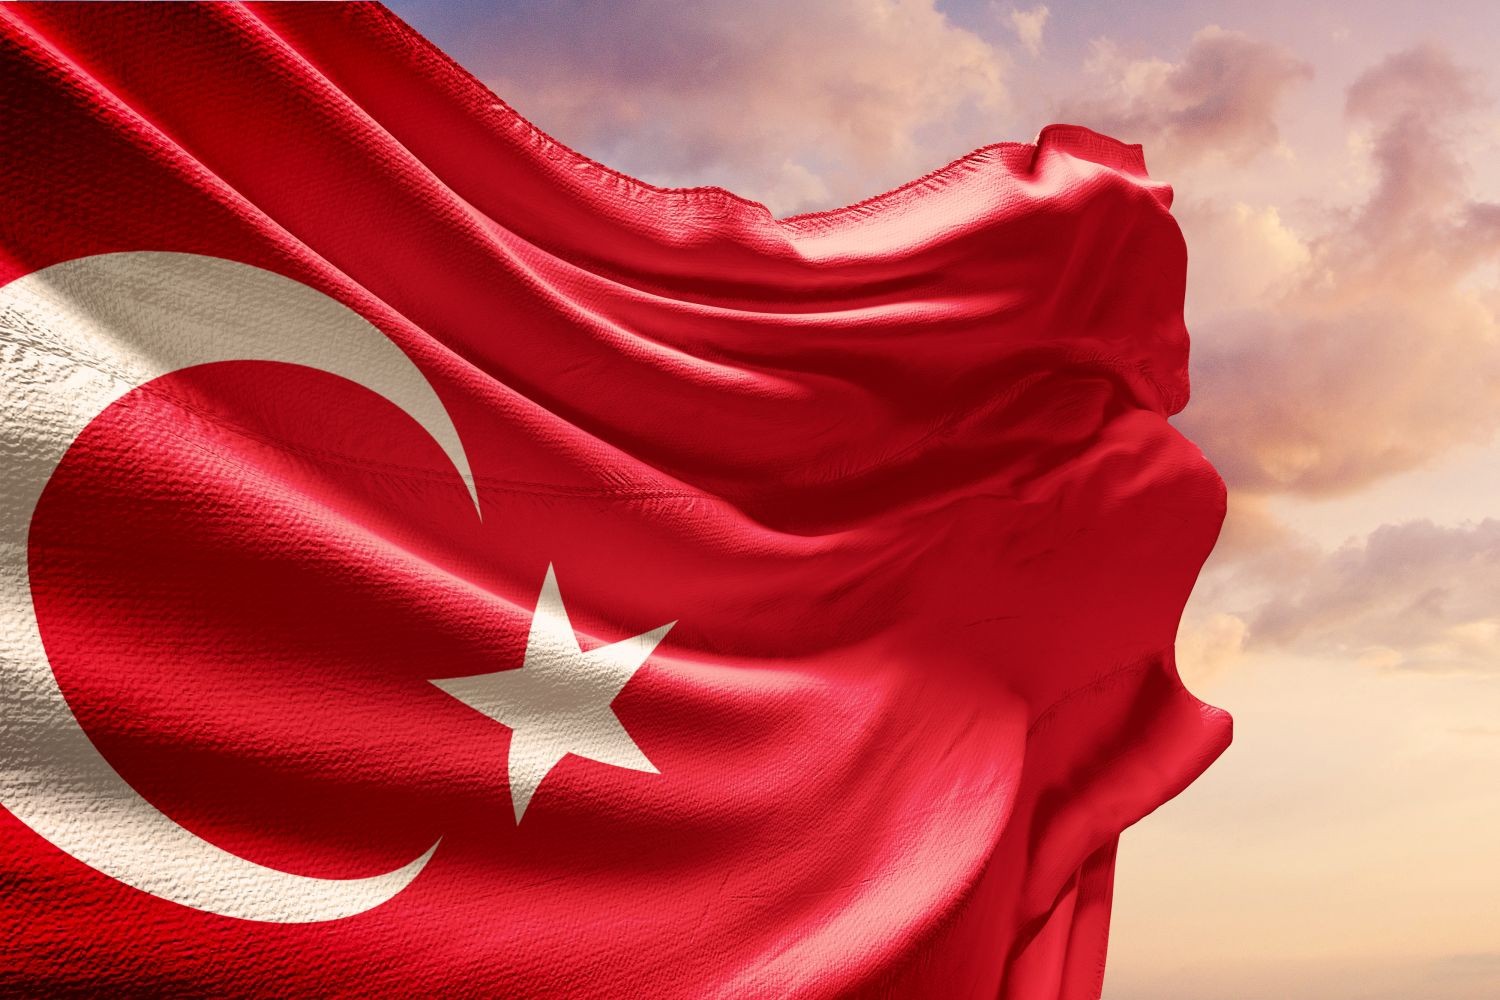 OFICJALNIE: Drugi turecki klub wycofuje się z Süper Lig po trzęsieniu ziemi